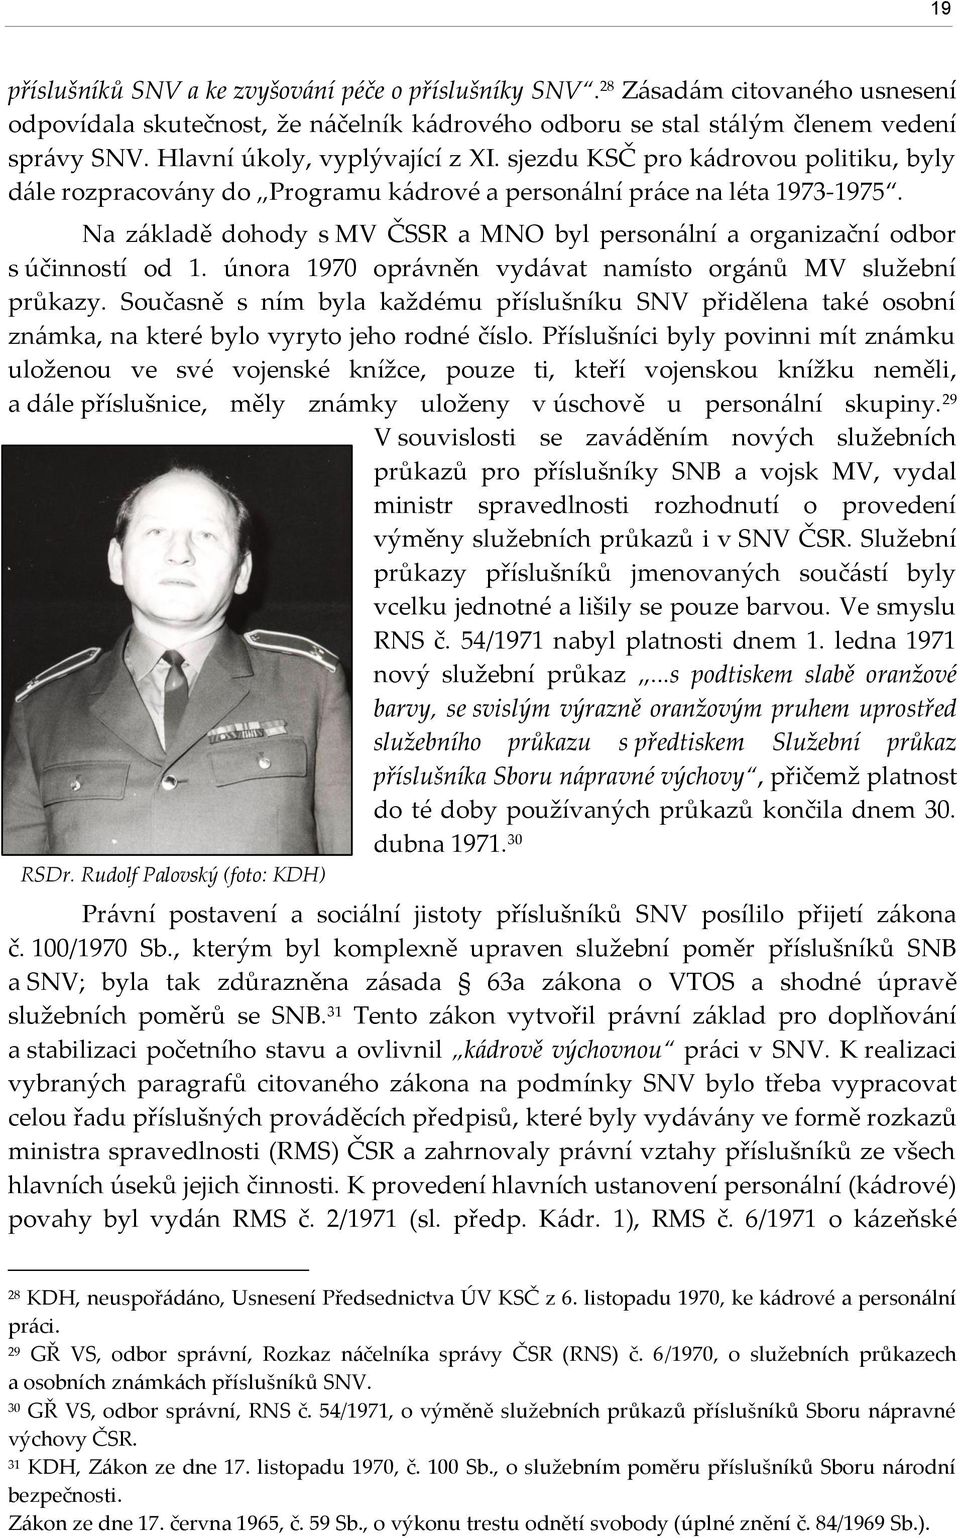 Na základě dohody s MV ČSSR a MNO byl personální a organizační odbor s účinností od 1. února 1970 oprávněn vydávat namísto orgánů MV služební průkazy.